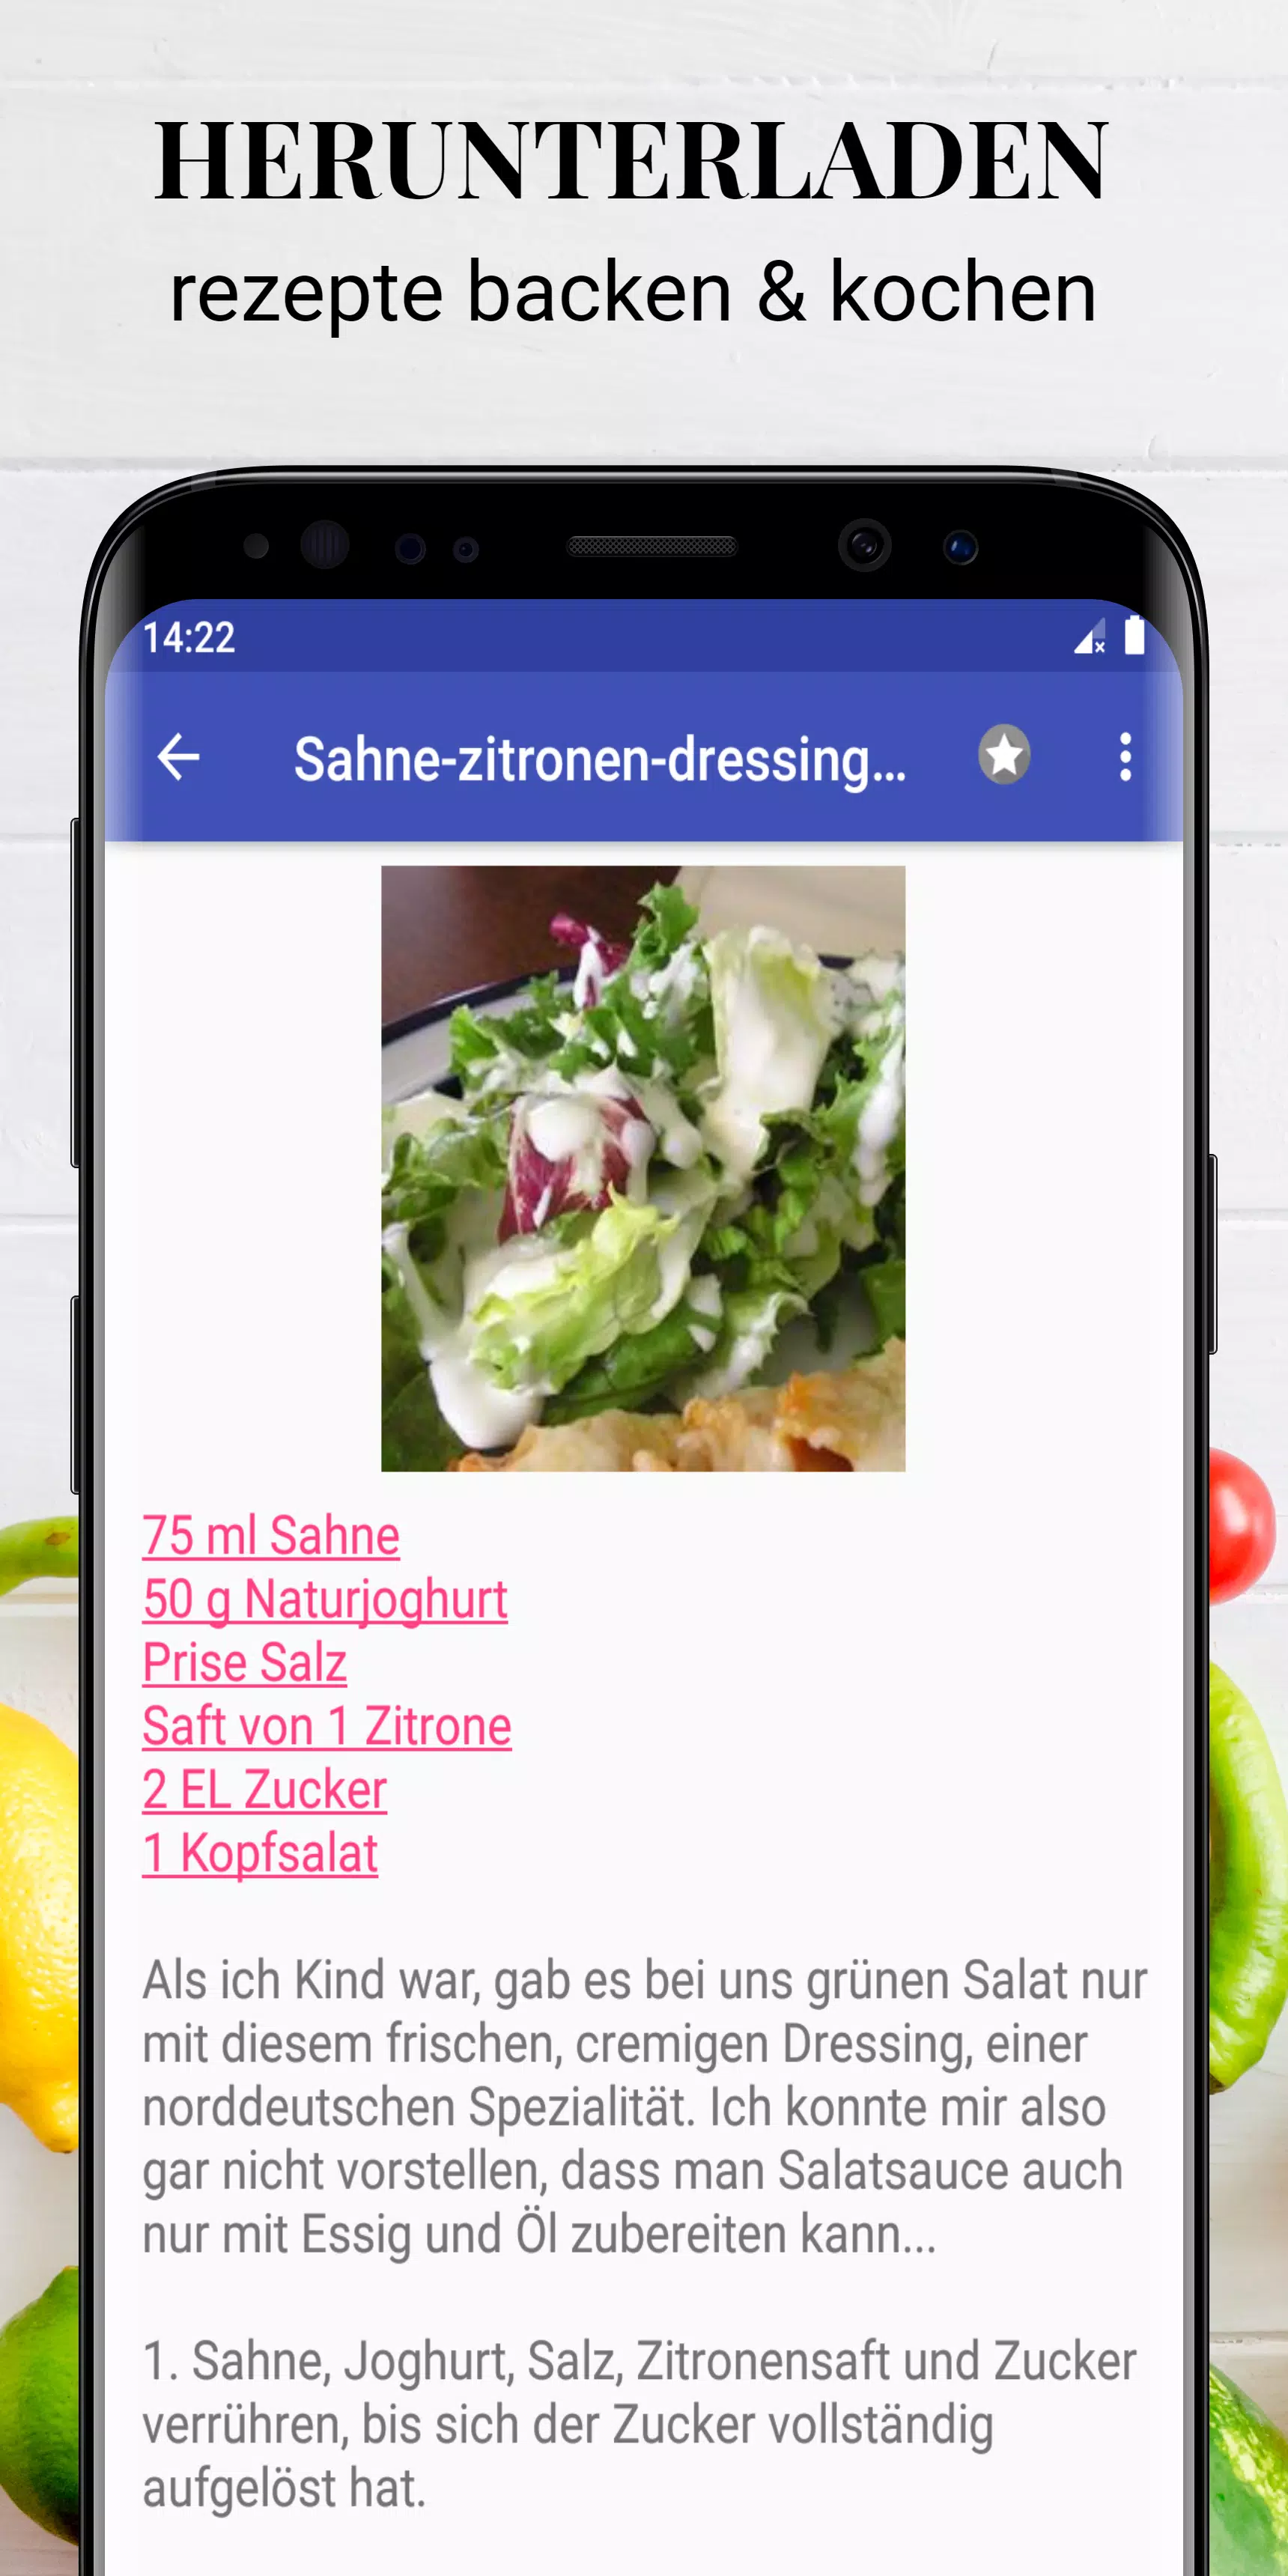 Deutsche rezepte app kostenlos offline! for Android - APK Download